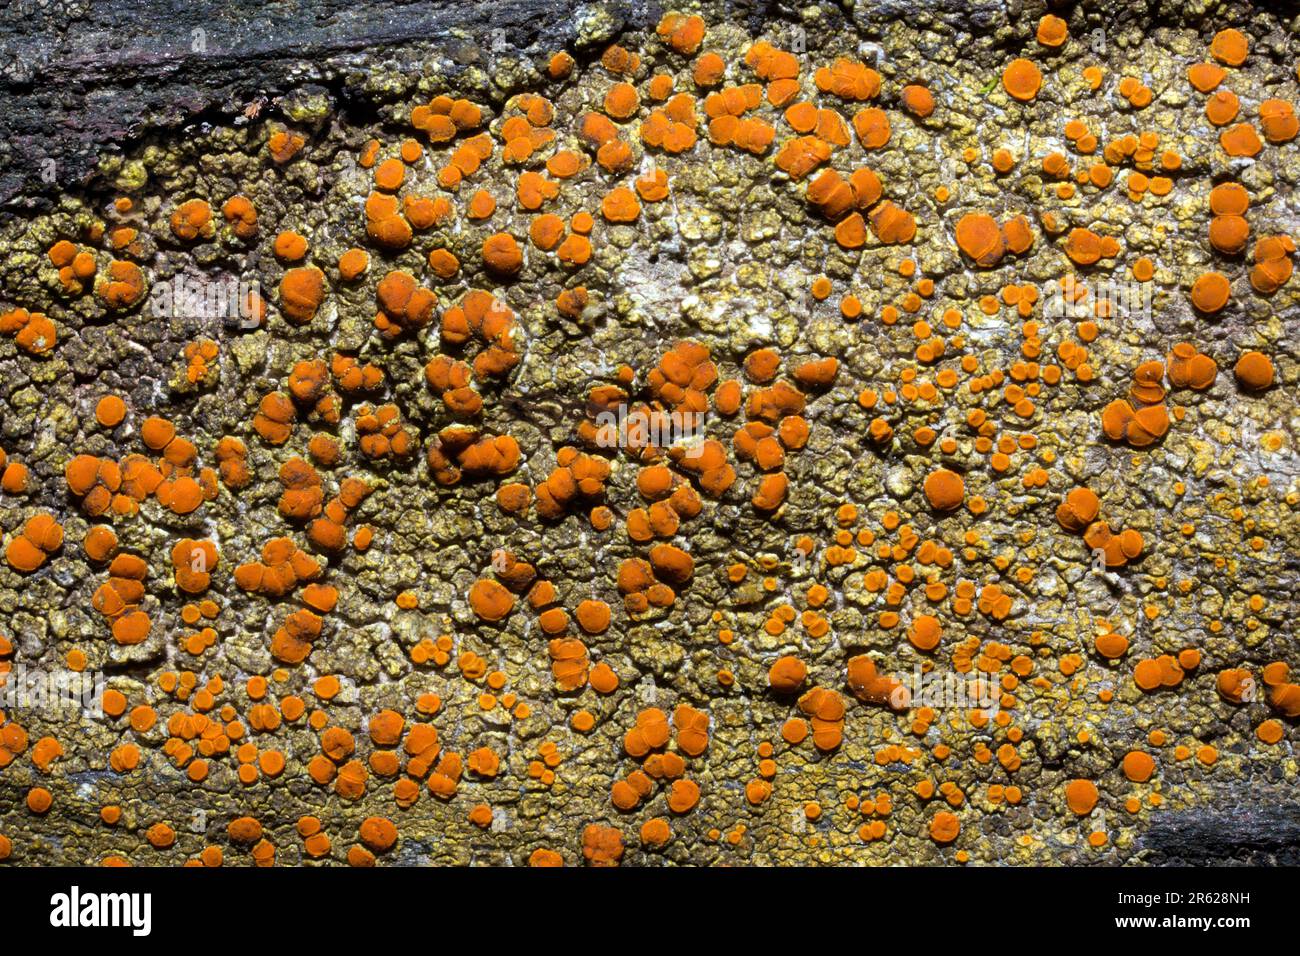 Caloplaca flavovirescens è un lichen crusoso spesso trovato su substrati artificiali e rocce calcaree. Si verifica in tutto l'emisfero N. Foto Stock